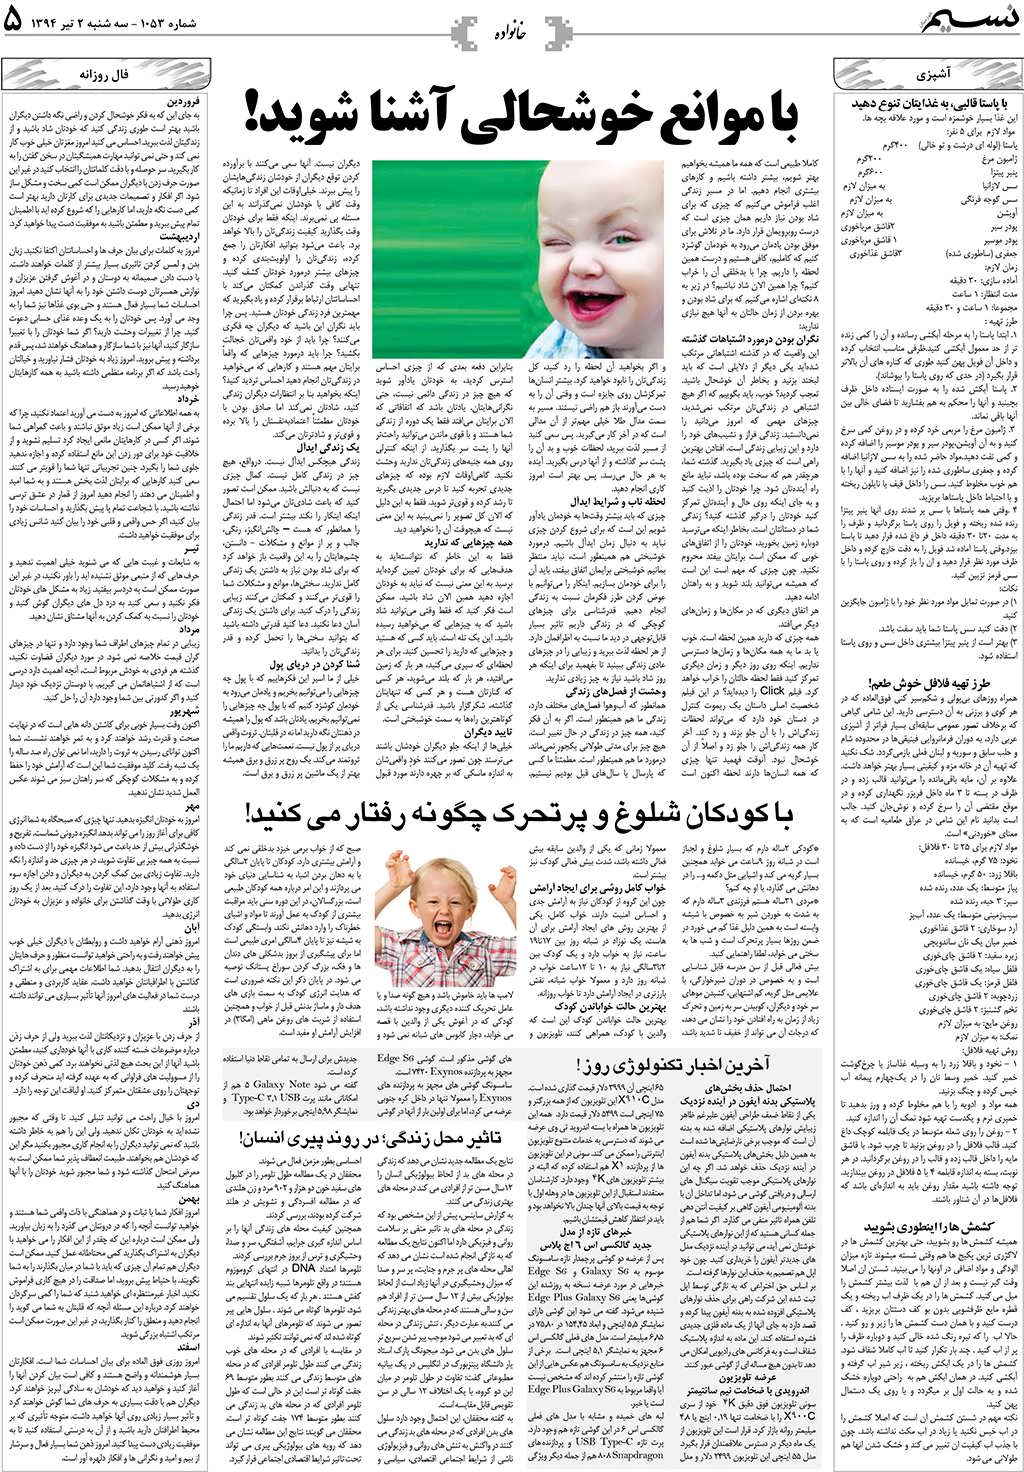 صفحه خانواده روزنامه نسیم شماره 1053